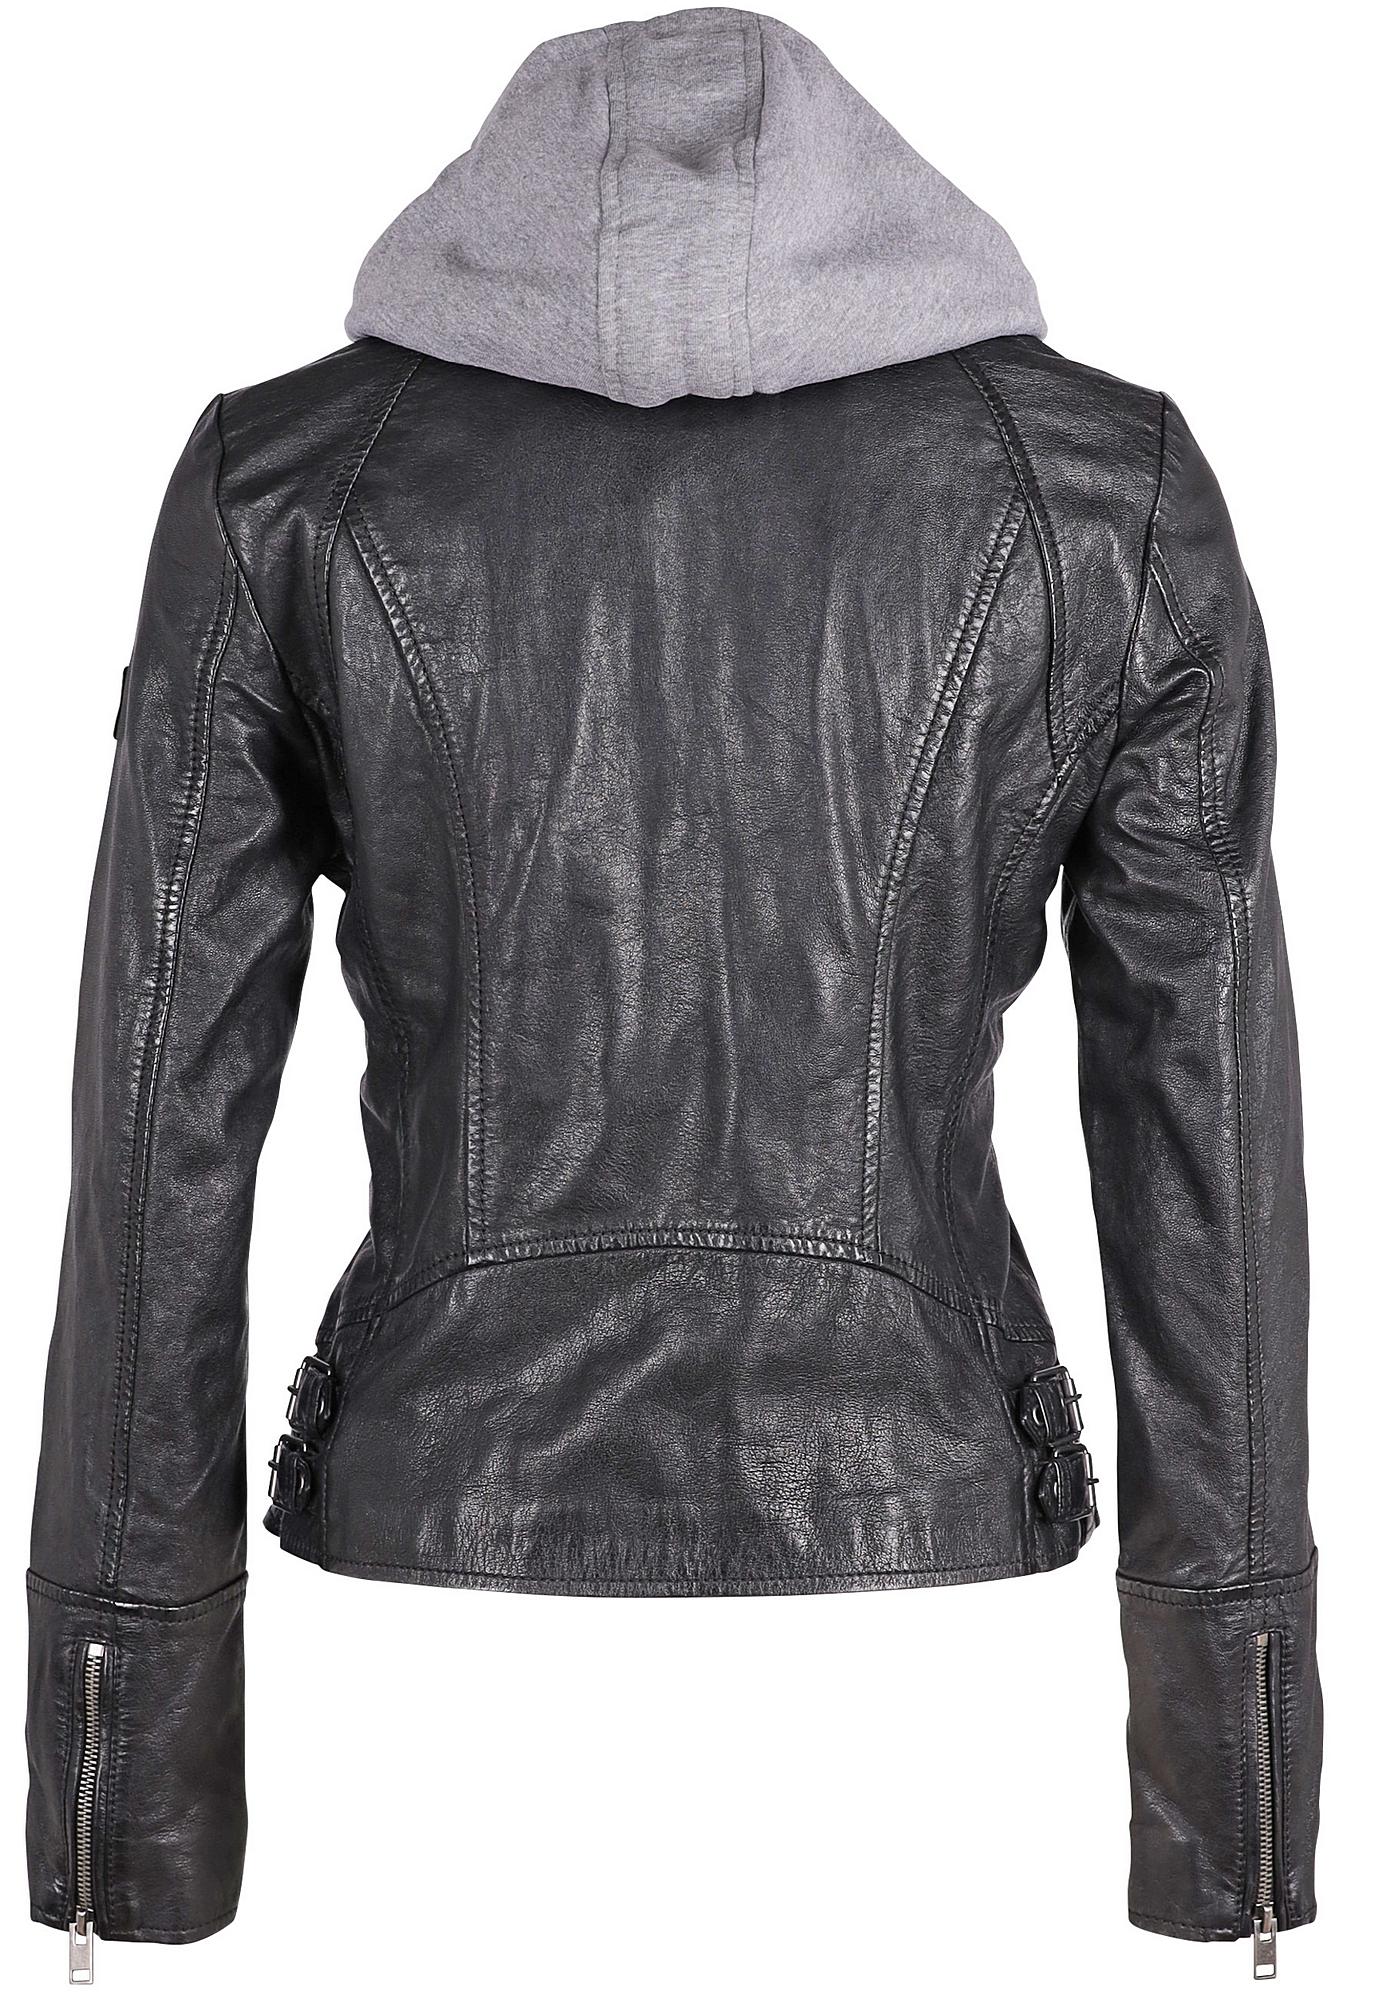 Nola RF Jacket, Black mauritiusleather – Leather